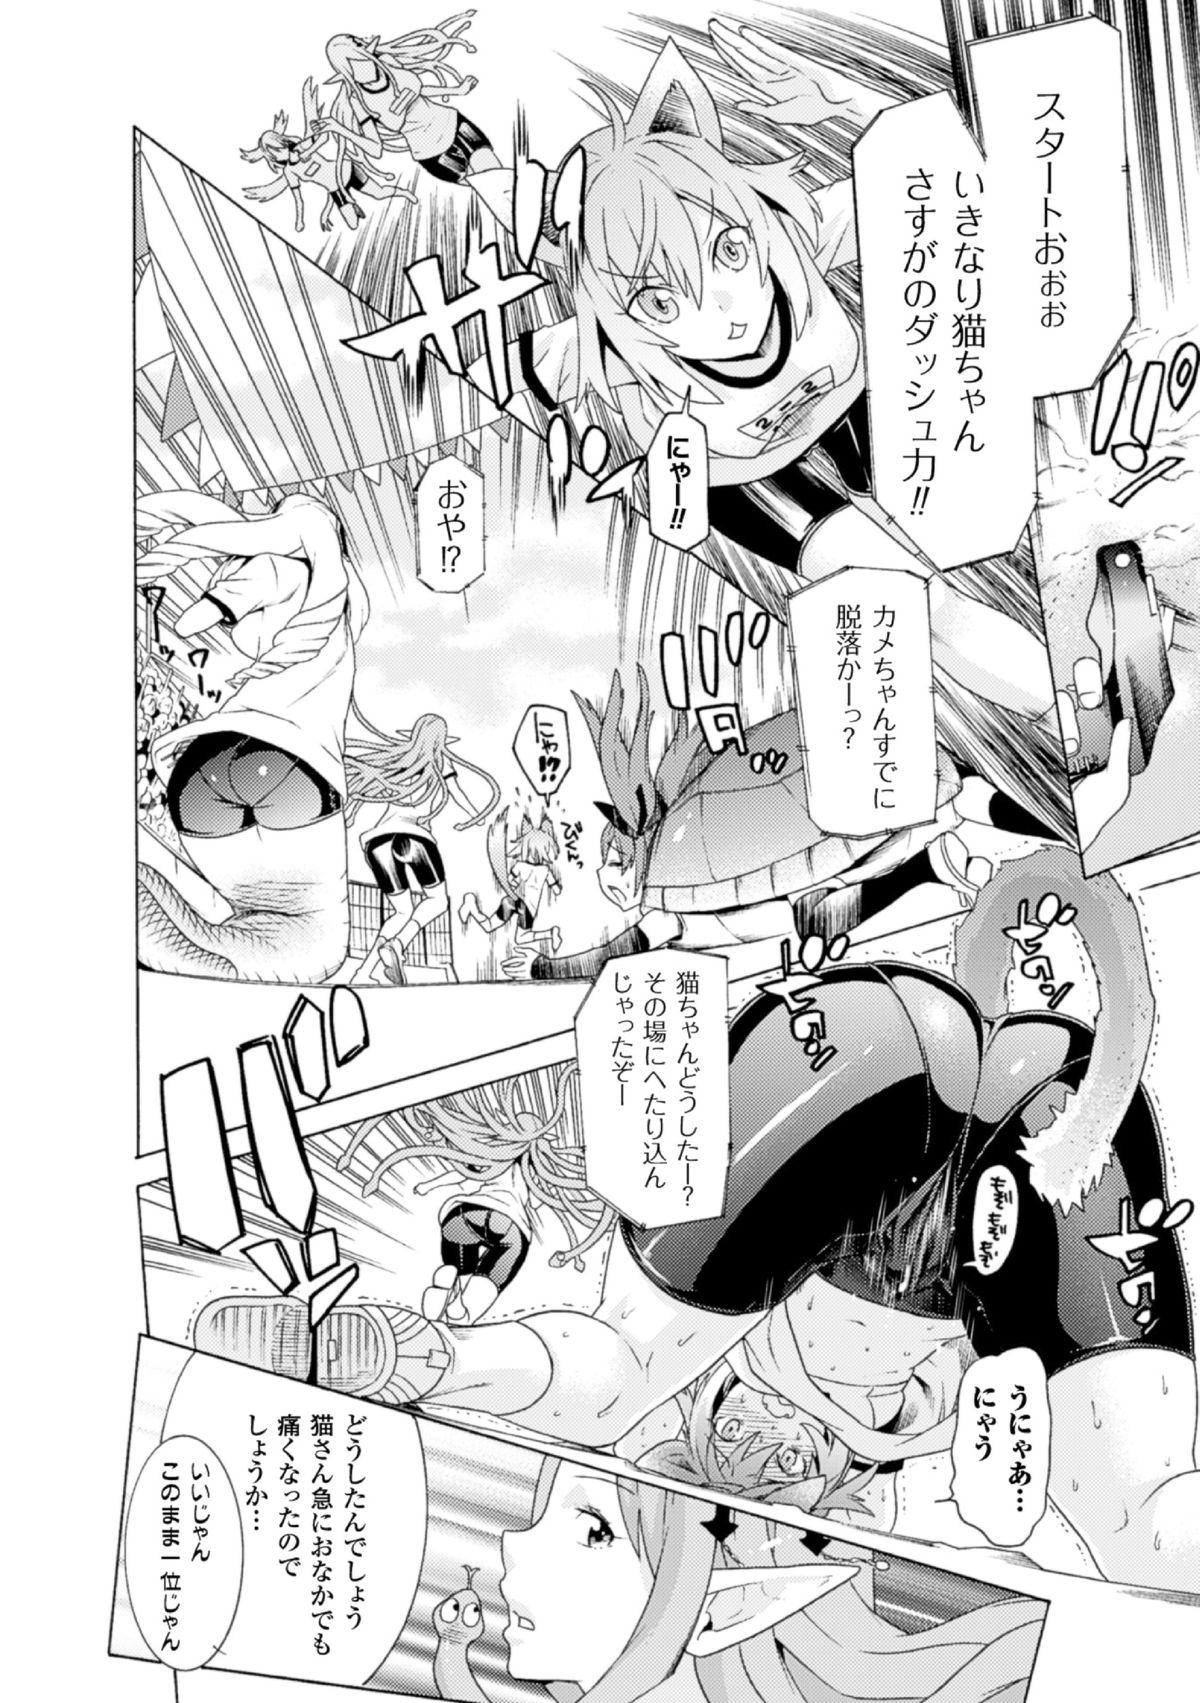 8teen 2D Comic Magazine - Monster Musume ga Tsudou Ishuzoku Gakuen e Youkoso! Vol. 2 Italiano - Page 6